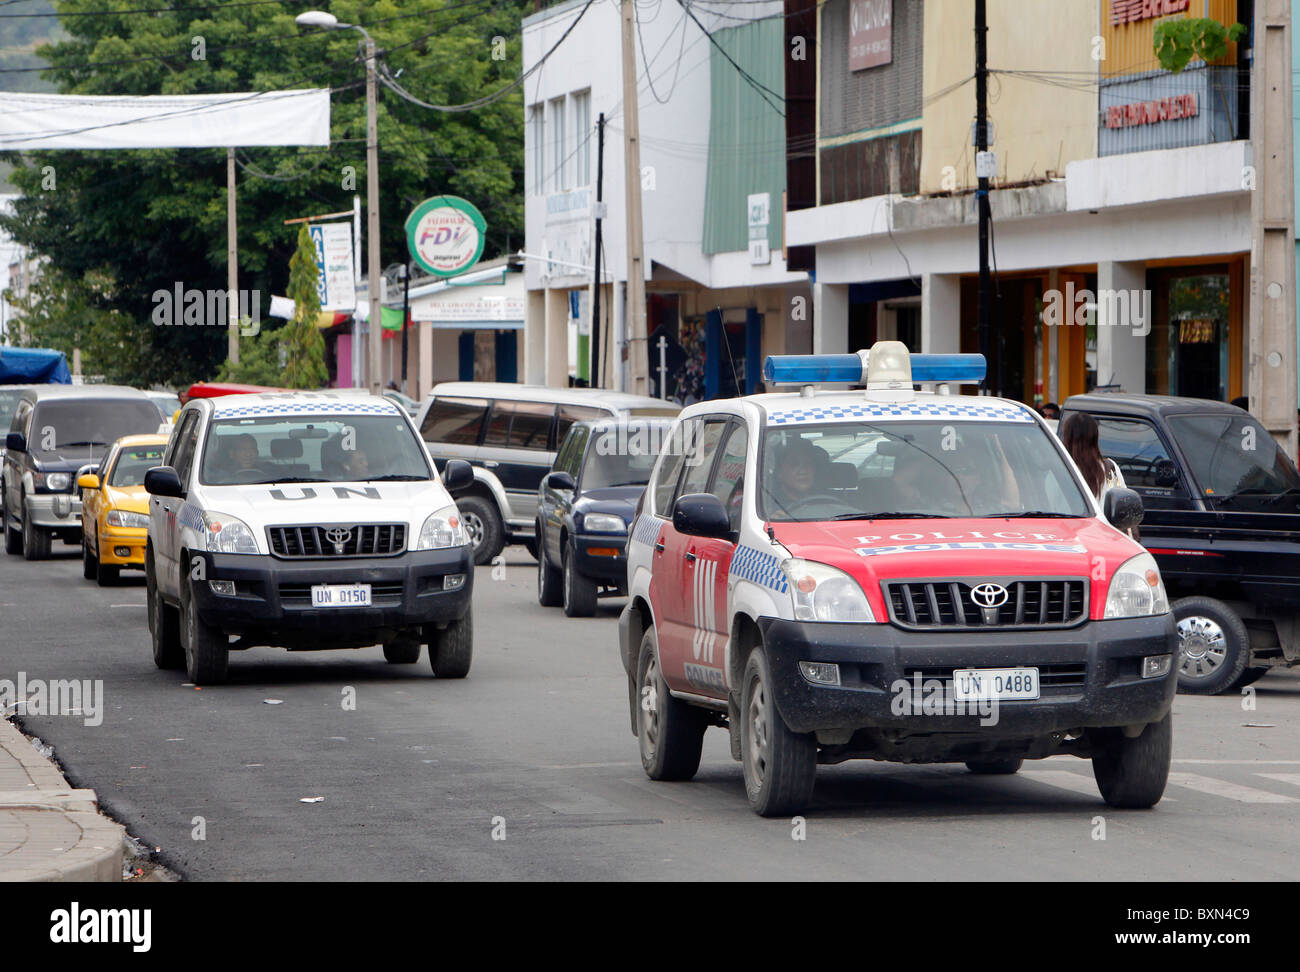 Los vehículos de las Naciones Unidas en la ciudad de Dili, Timor Leste (Timor Oriental) Foto de stock